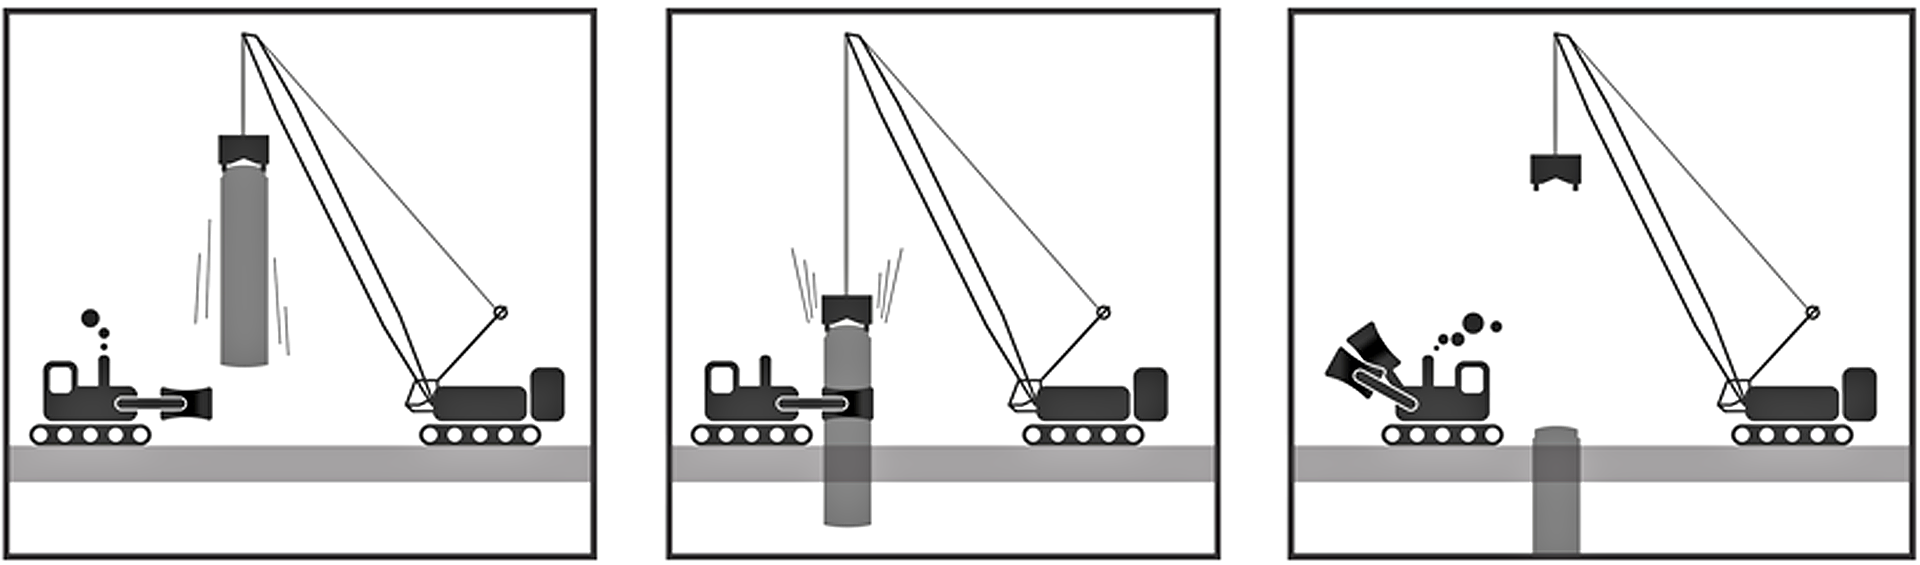 Metod til at holde en monopæl lodret, når det lange stålrør skal rammes ned i jorden. Illustration: MarkGraphic